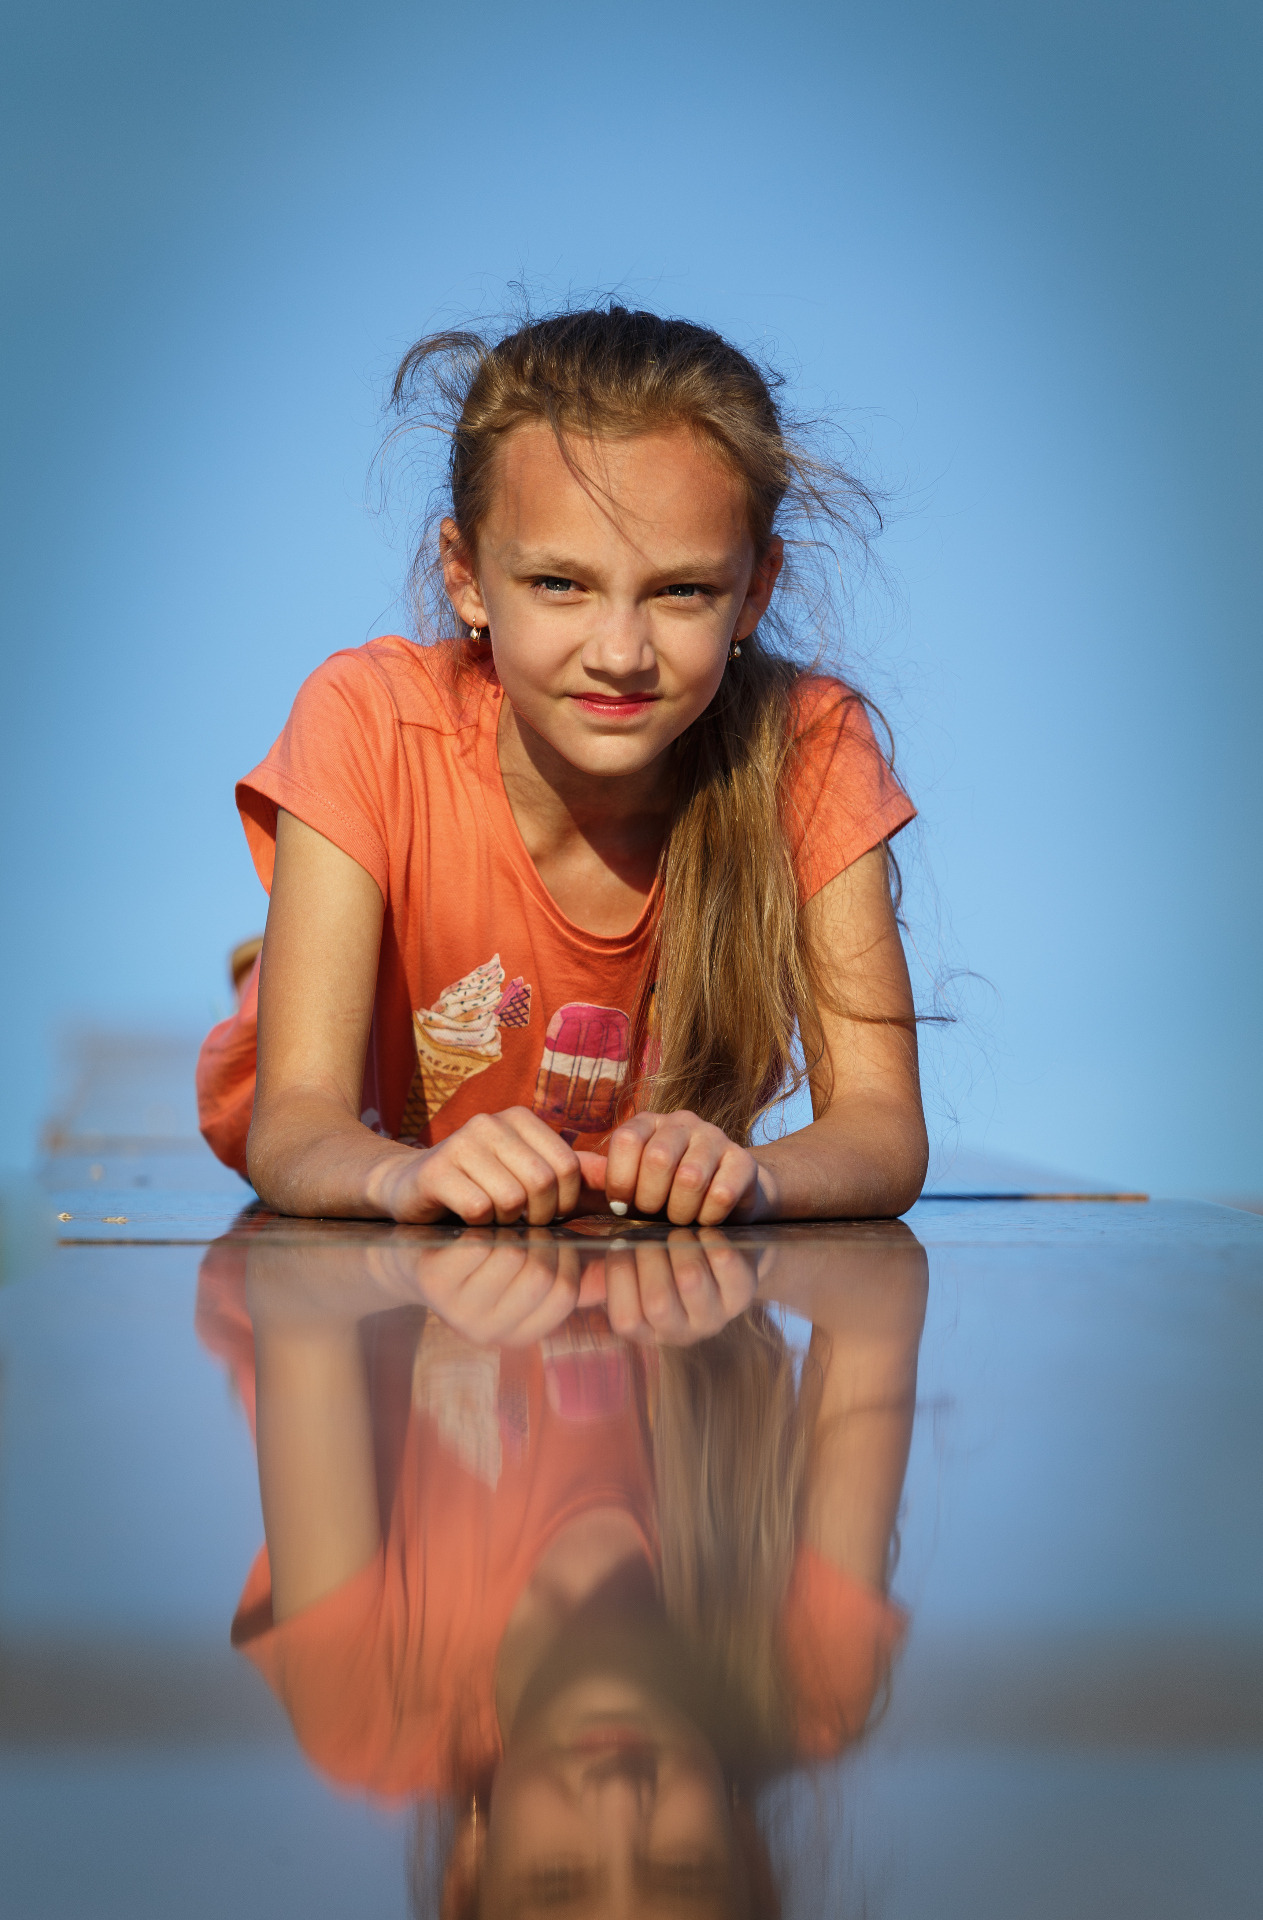 Детский, рекламный, семейный фотограф Виталий Шерепченков , Витебск, фотография от 30.06.2016